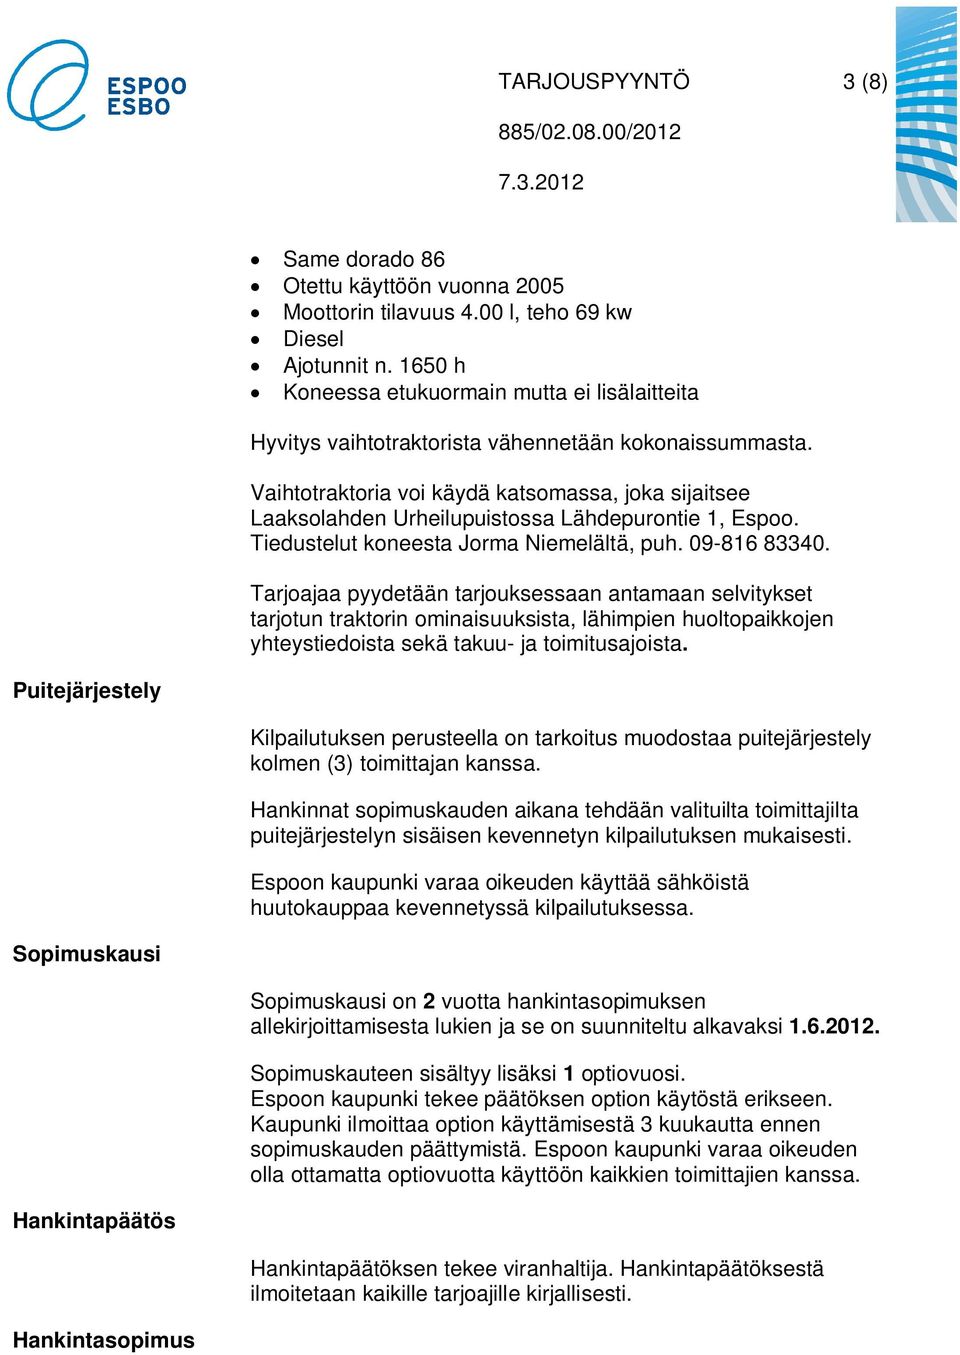 Vaihtotraktoria voi käydä katsomassa, joka sijaitsee Laaksolahden Urheilupuistossa Lähdepurontie 1, Espoo. Tiedustelut koneesta Jorma Niemelältä, puh. 09-816 83340.